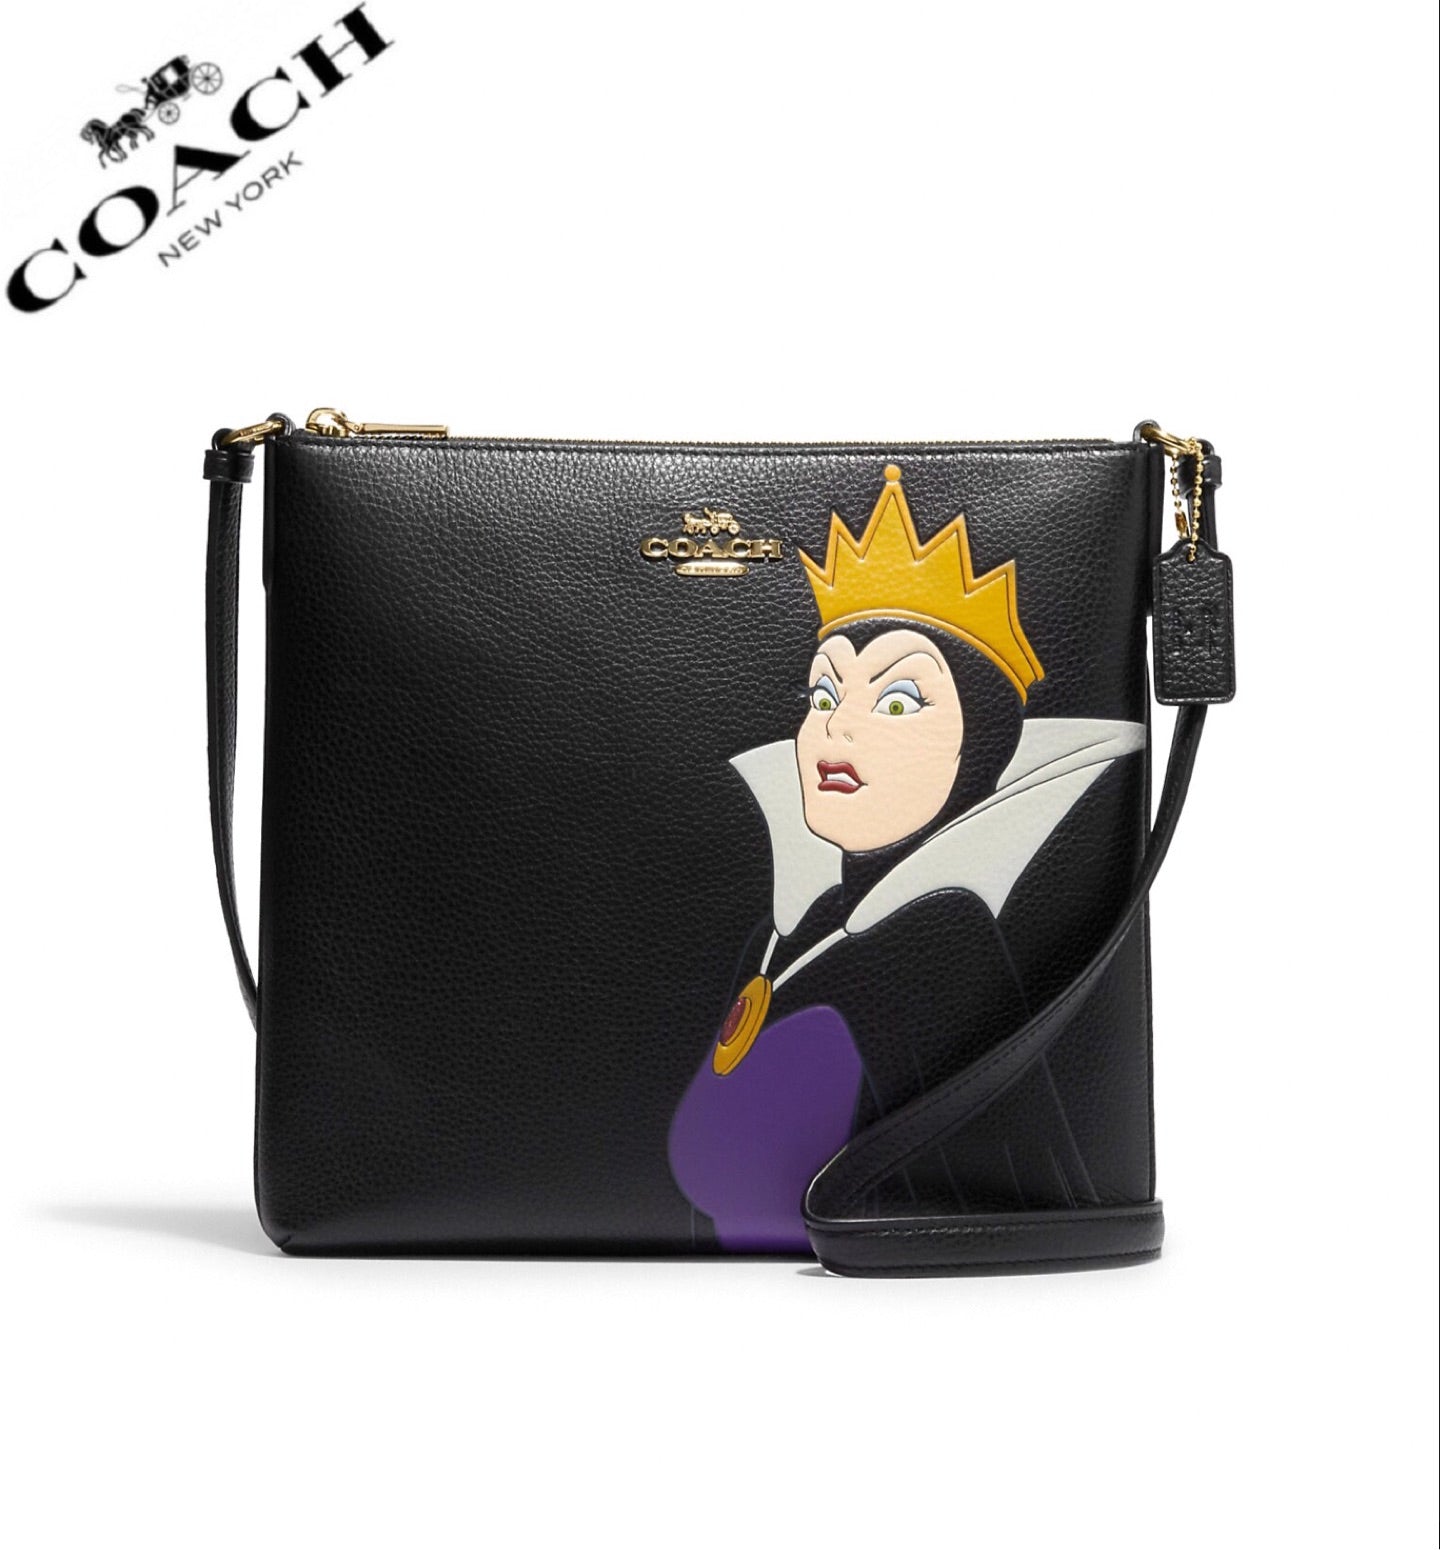 Disney X Coach Rowan File Bag With Evil Queen Motif